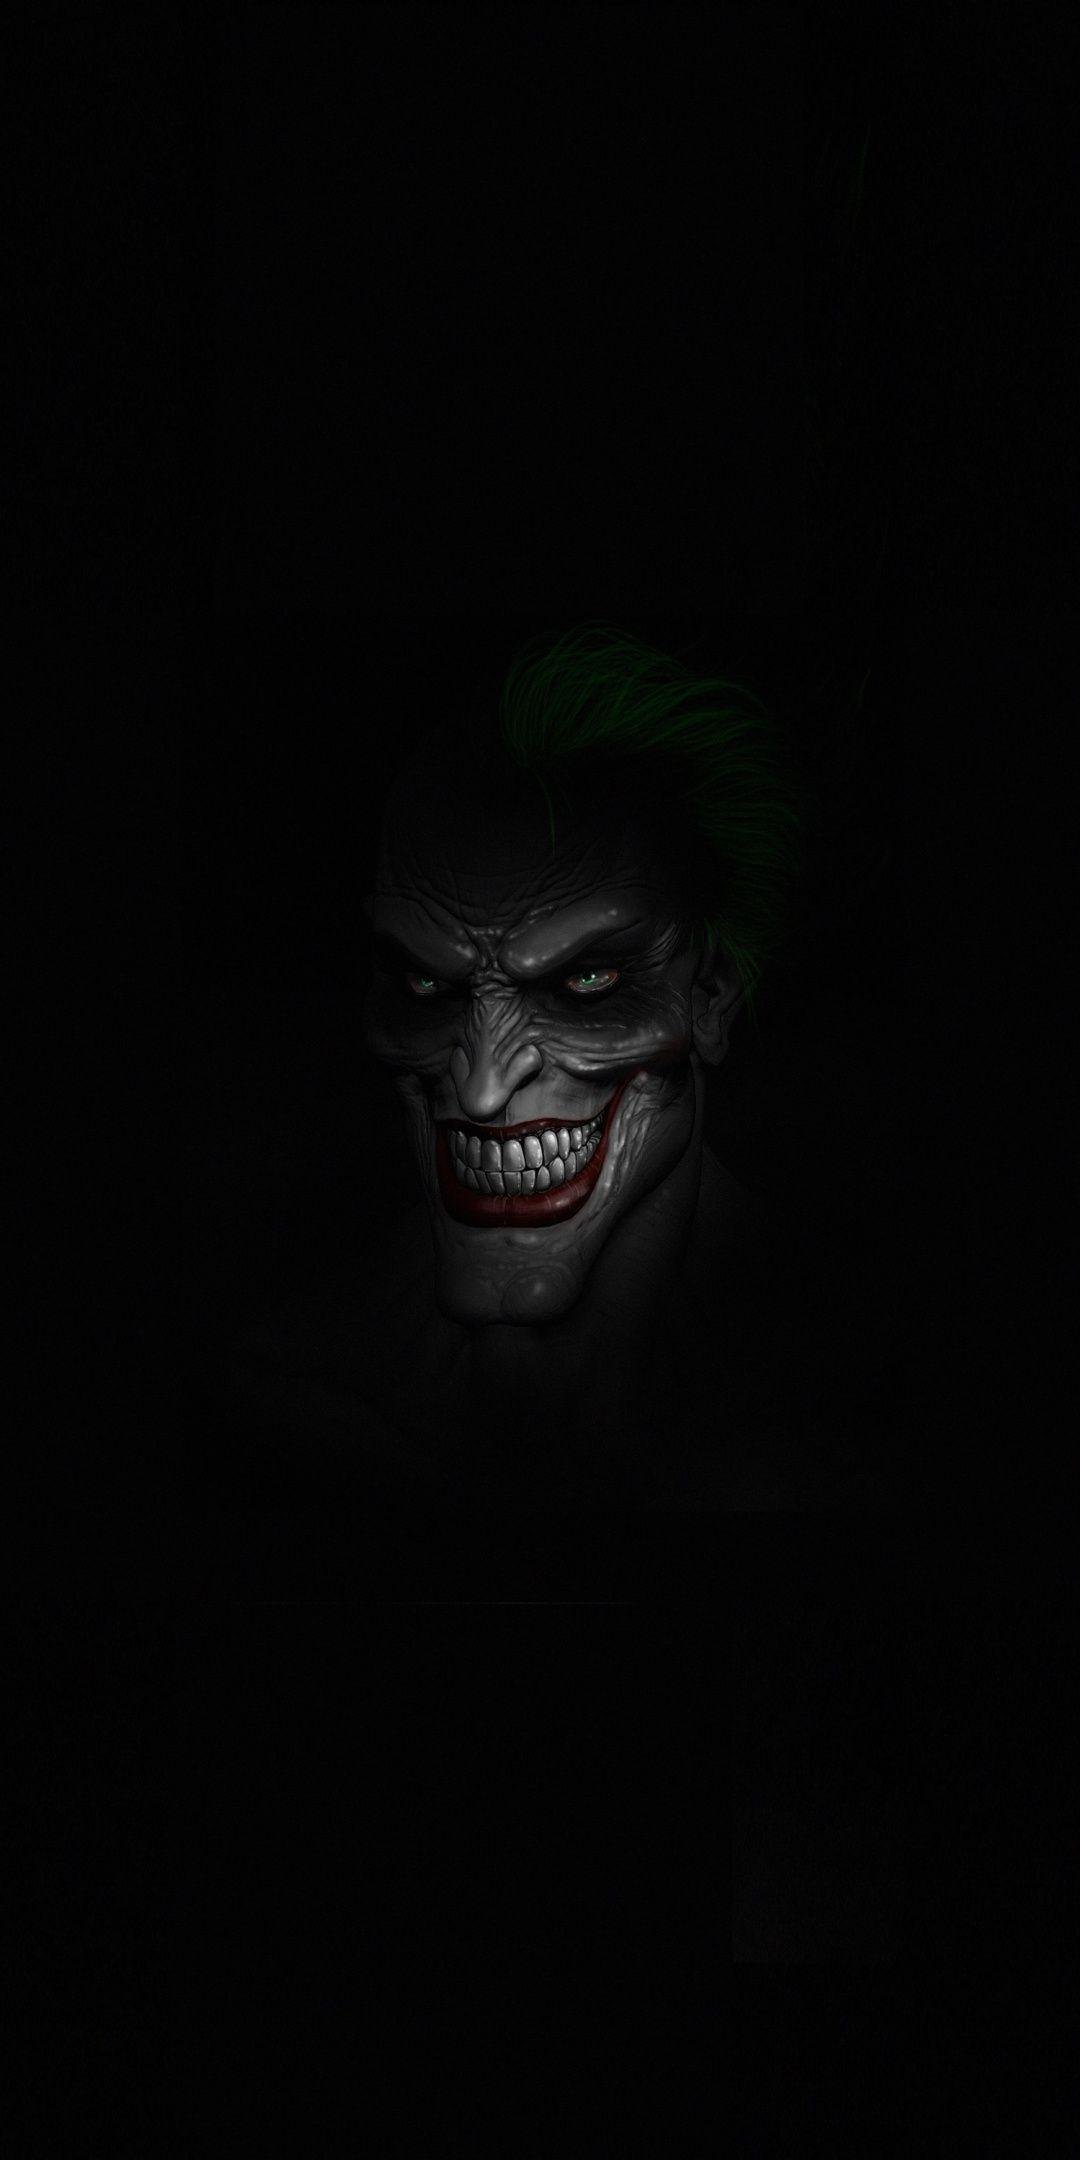 Wallpaper smile, Joker, black, joker images for desktop, section минимализм  - download